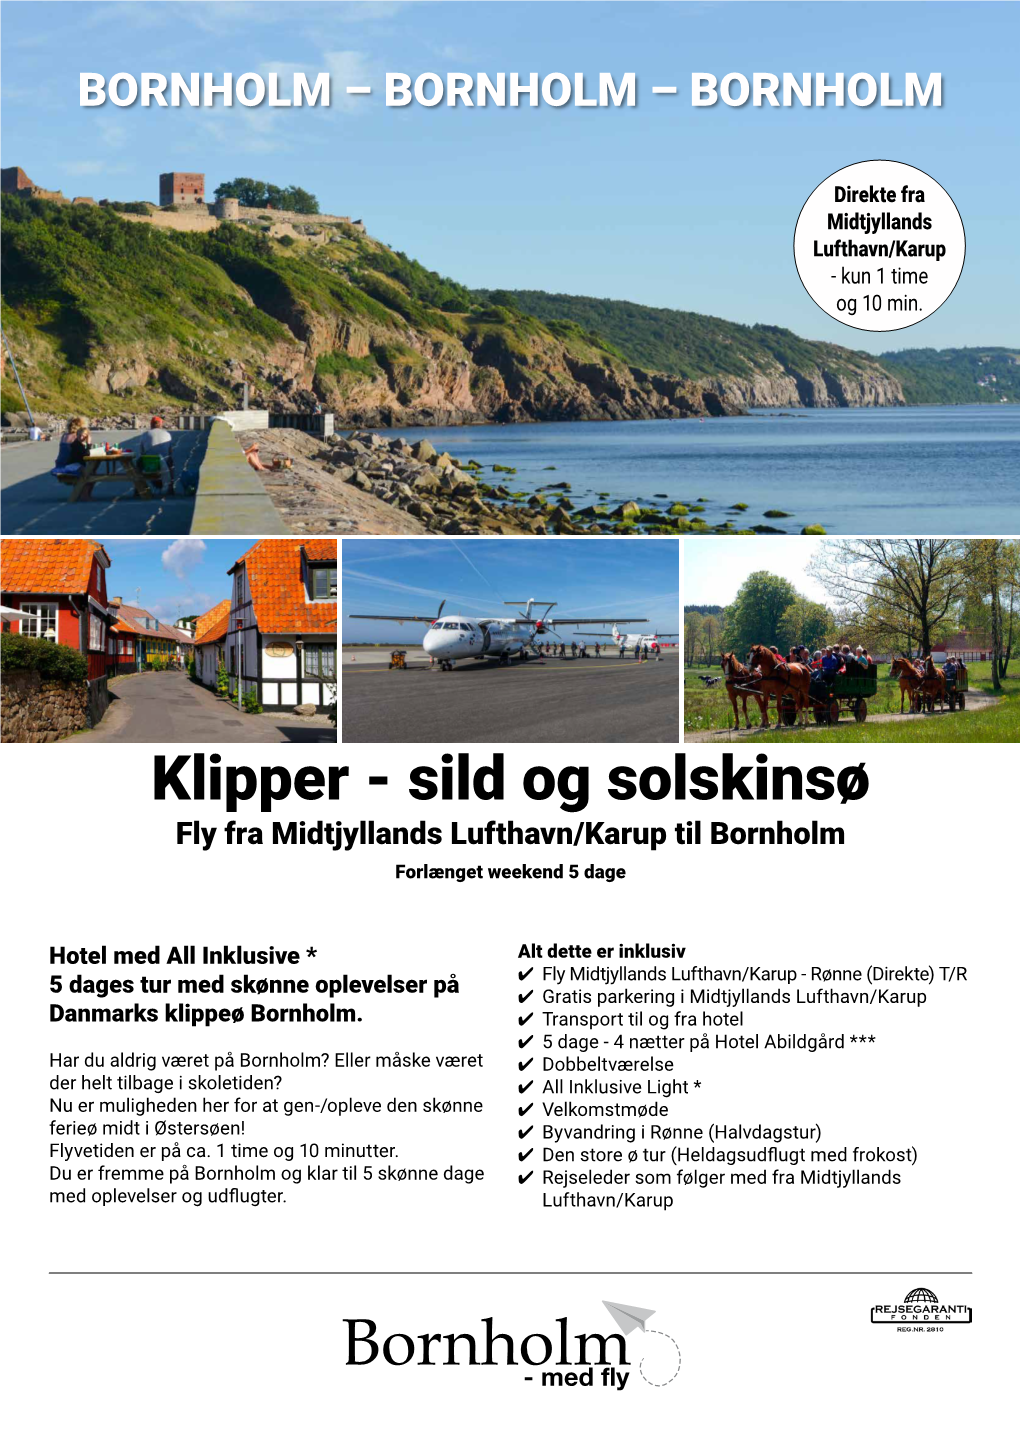 Klipper - Sild Og Solskinsø Fly Fra Midtjyllands Lufthavn/Karup Til Bornholm Forlænget Weekend 5 Dage